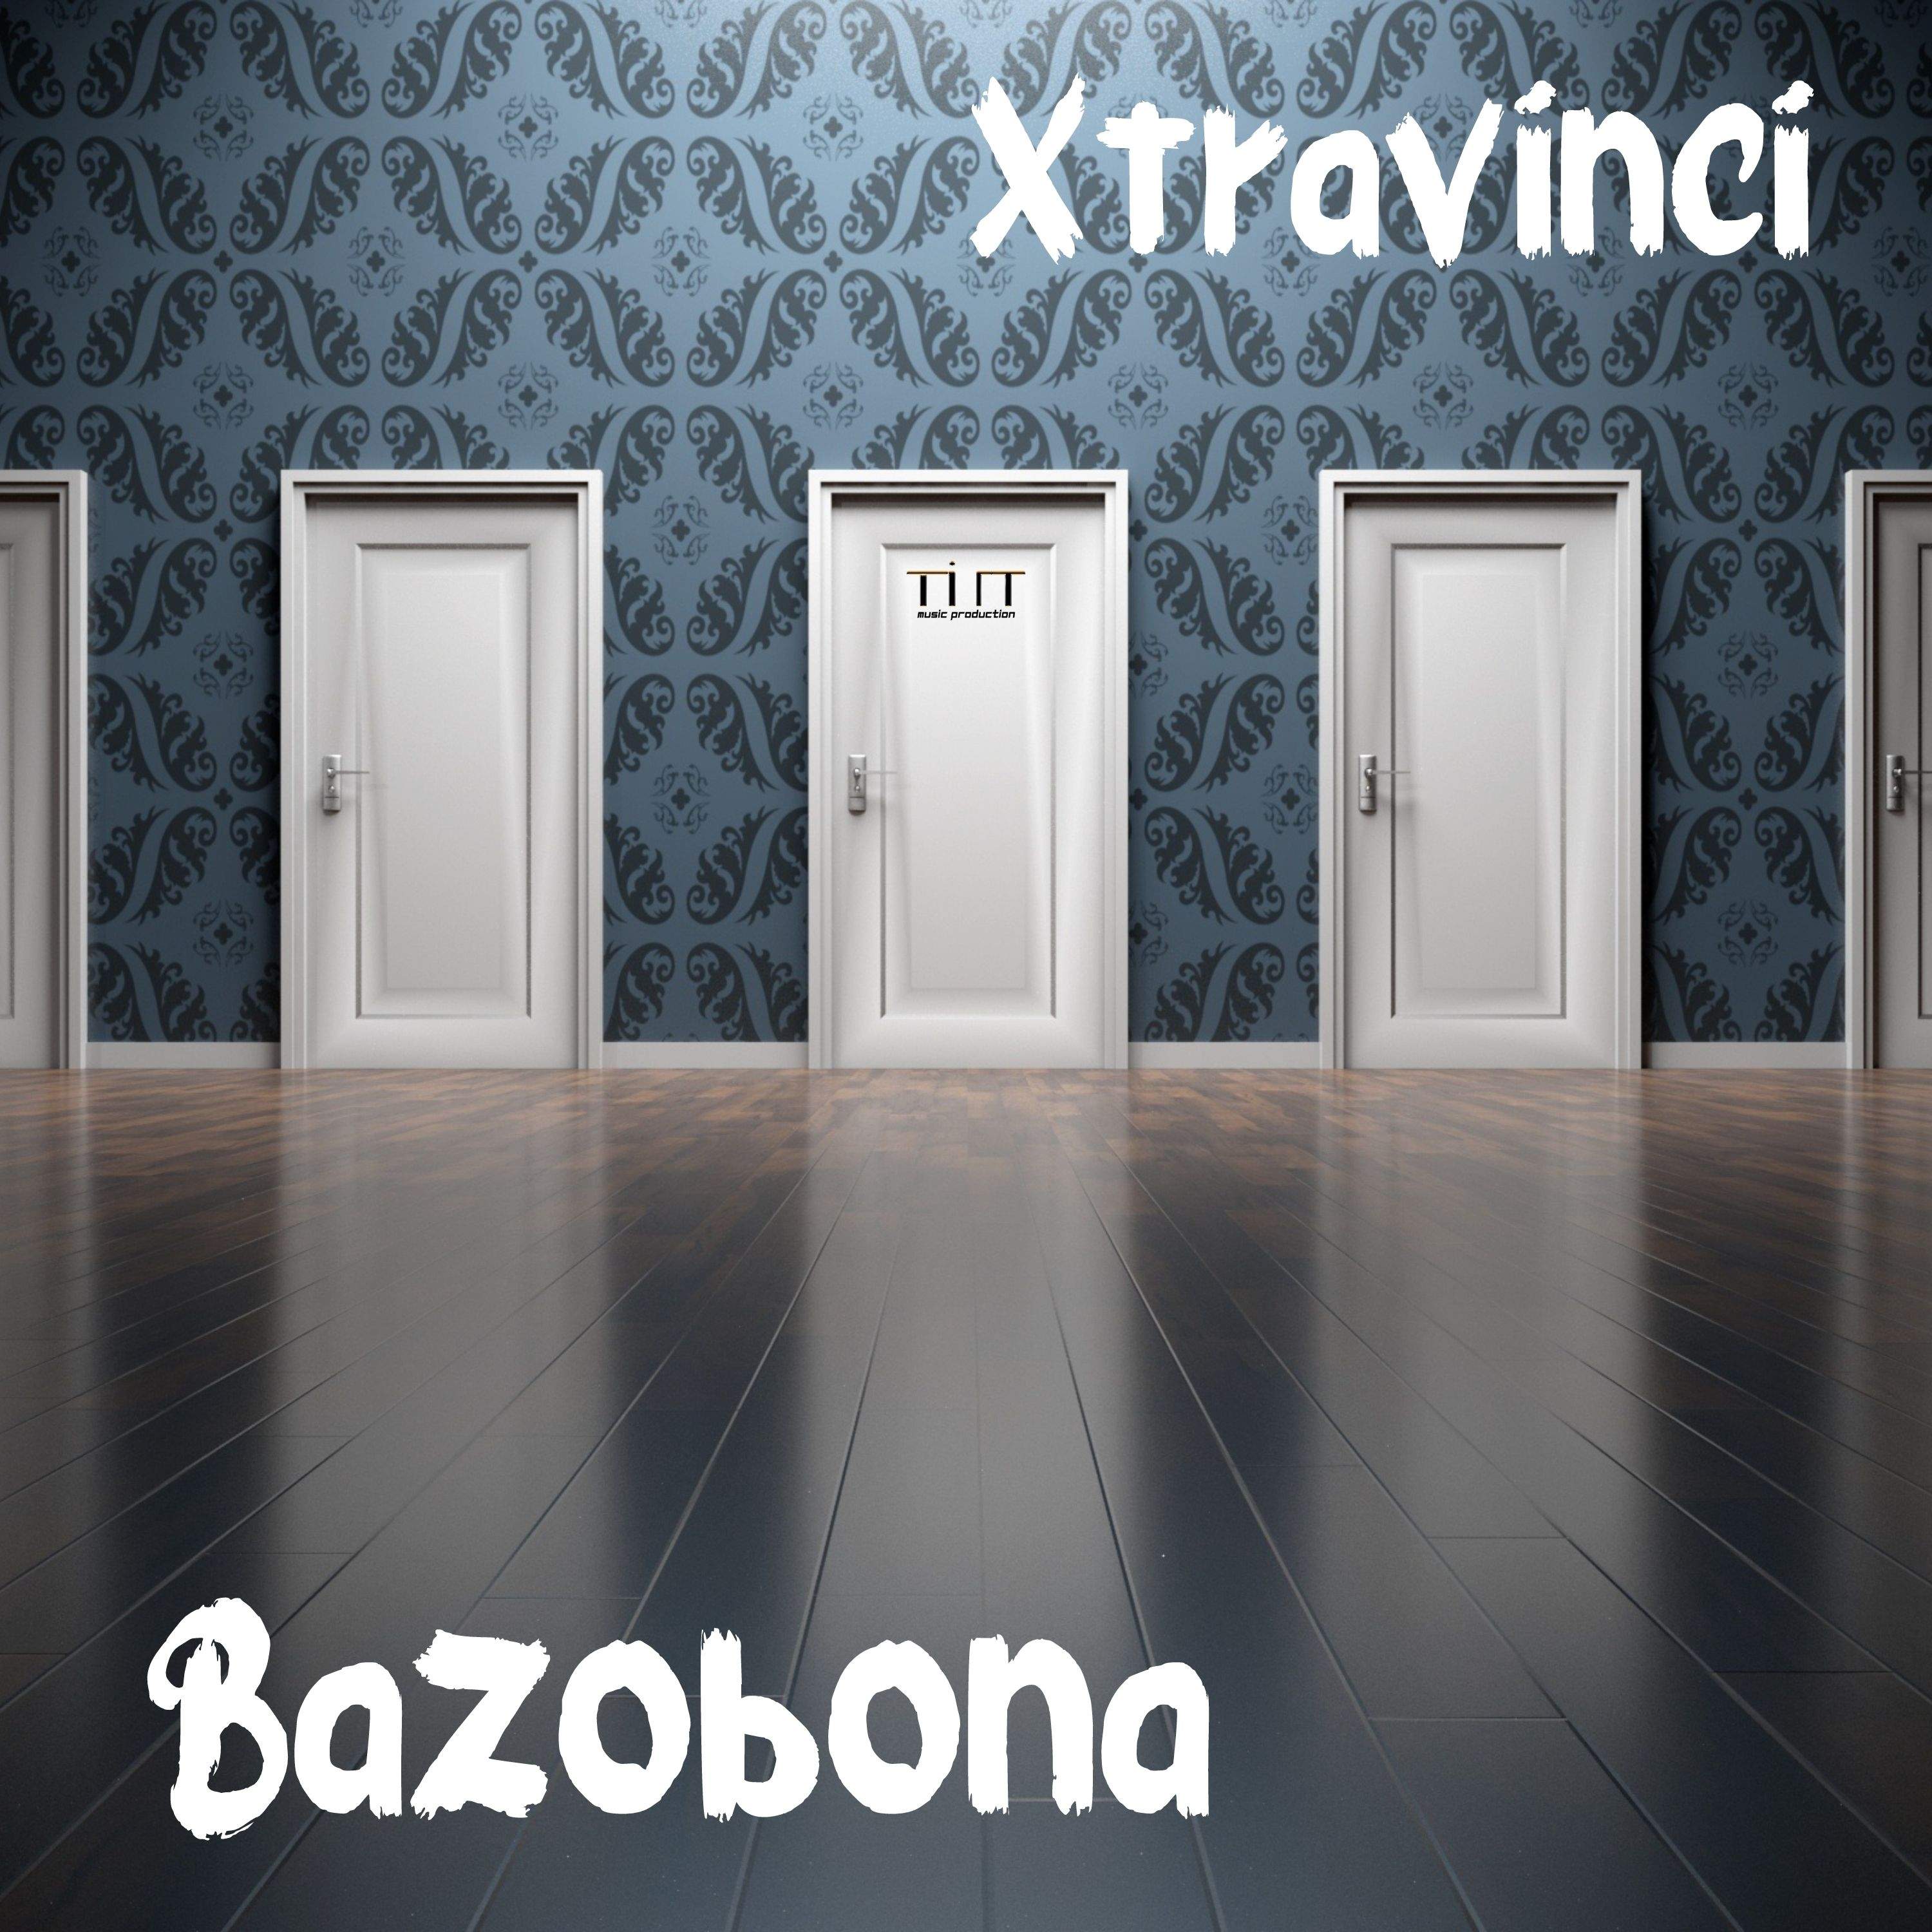 Bazobona è il nuovo brano dell'Artista Sud Africano Xtravinci!